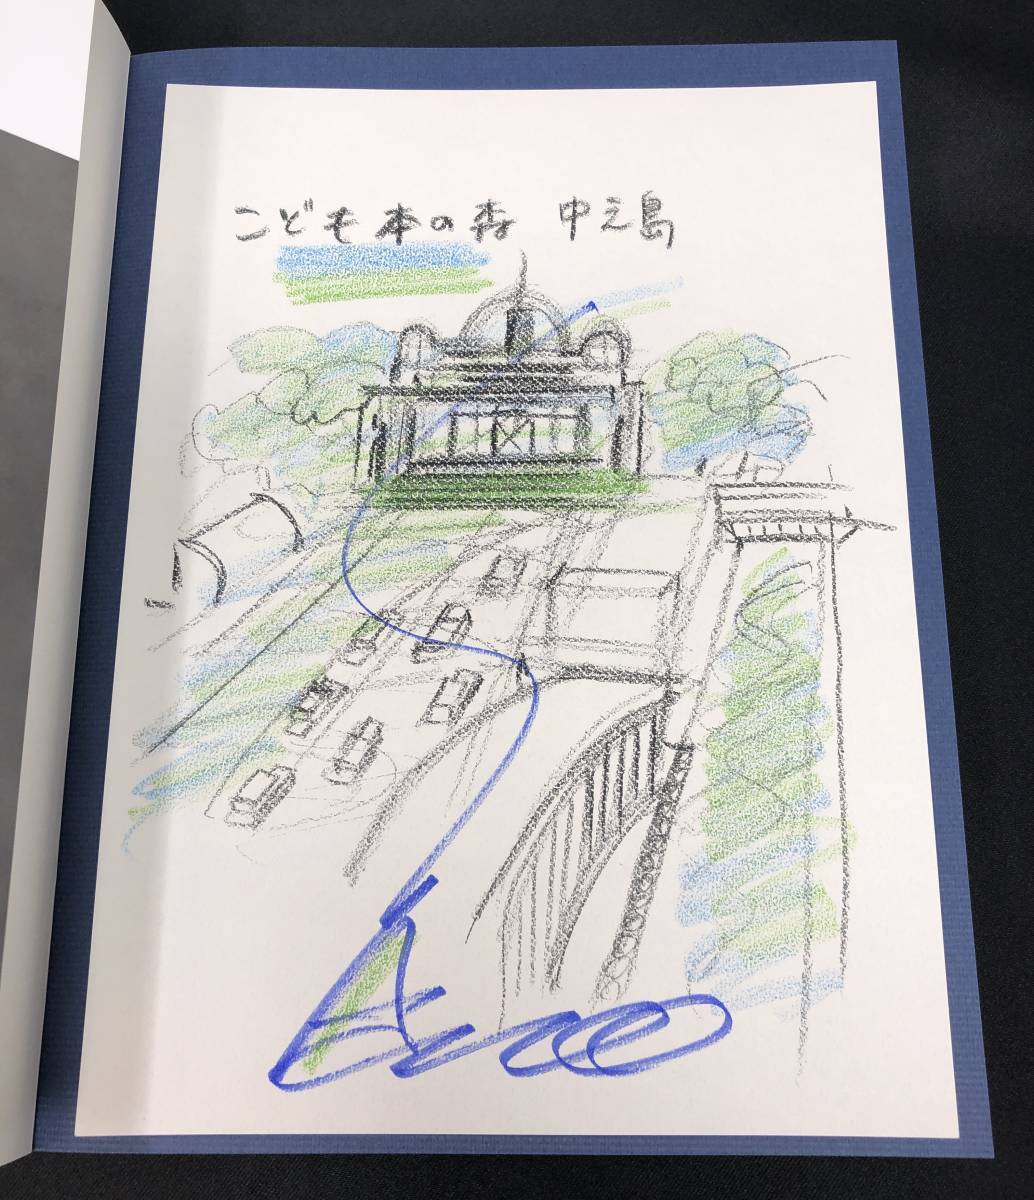 Tadao Ando's Architecture 0 Erweiterte und überarbeitete Ausgabe mit handsignierter Zeichnung (Kinderbuchwald Nakanoshima) Tadao Ando 0 Prozess- und Ideenskizzenillustration, Naturwissenschaft und Technik, Maschinenbau, Architekturingenieurwesen